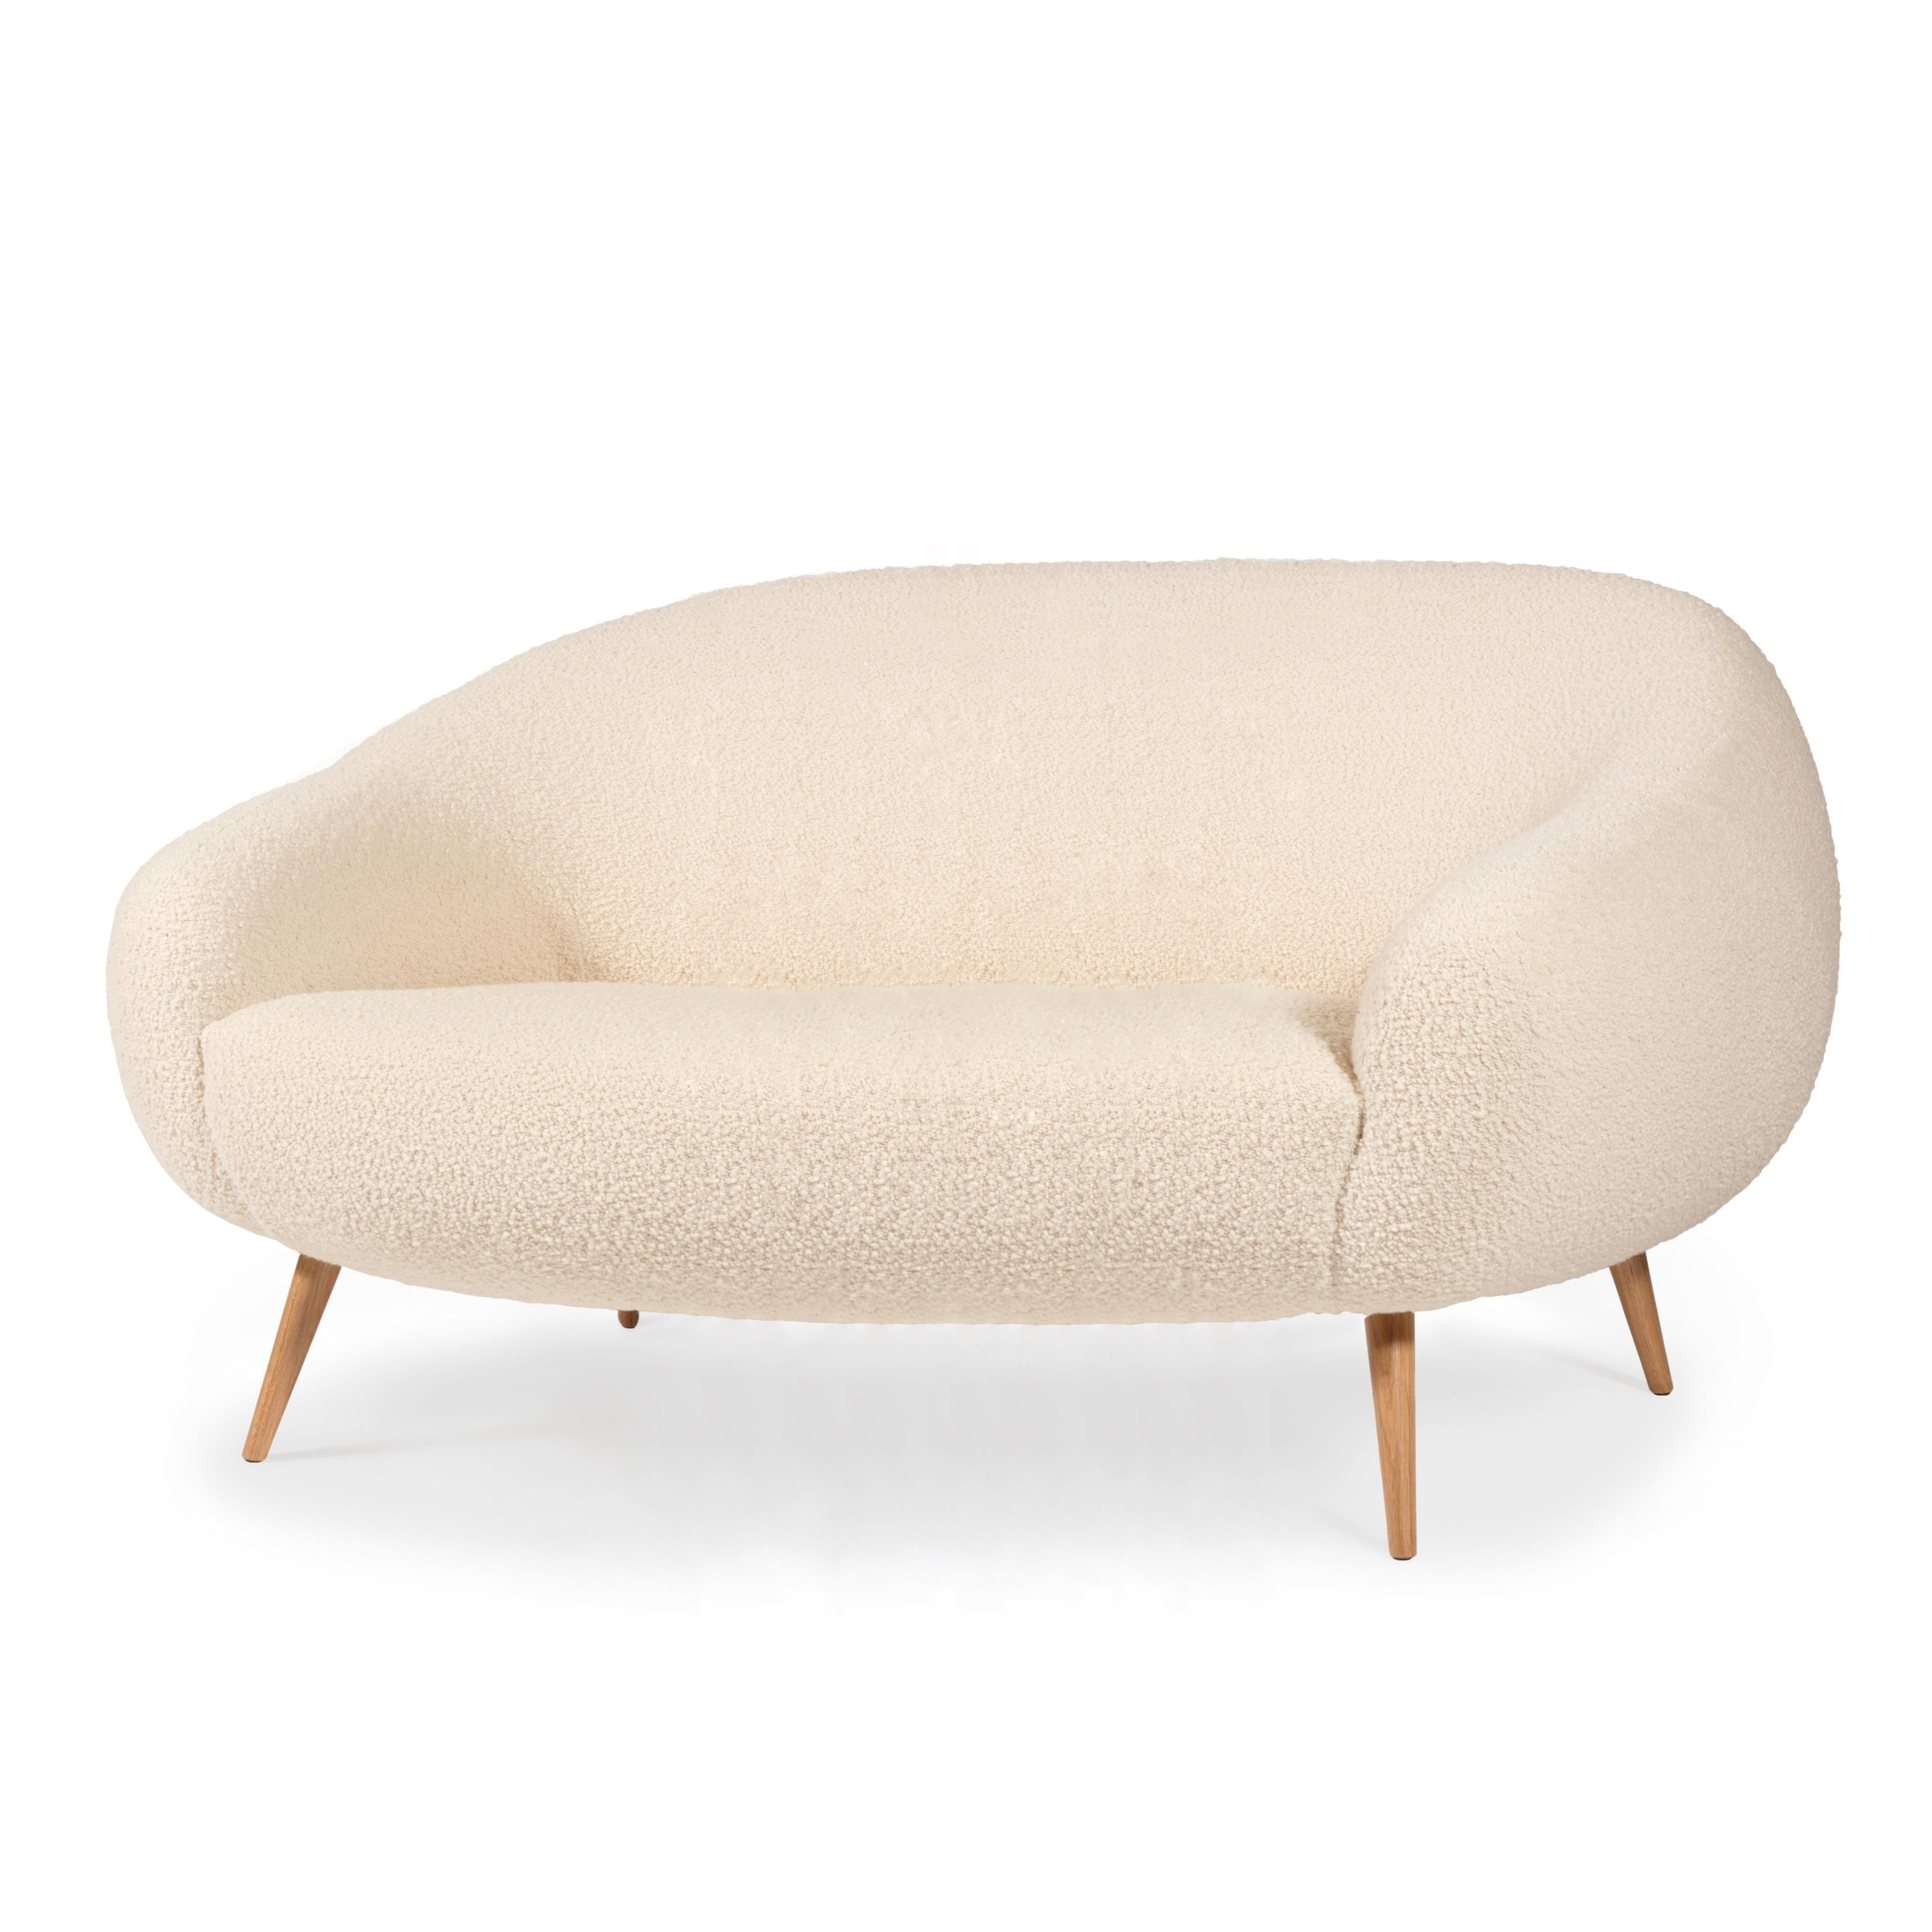 Das Niemeyer-Sofa ist nach dem brasilianischen Architekten Oscar Niemeyer benannt, dessen Architektur wie skulpturale Poesie in die Geschichte der Menschheit eingegangen ist.
Die abgerundeten Linien des Sofas sind von der bemerkenswerten 